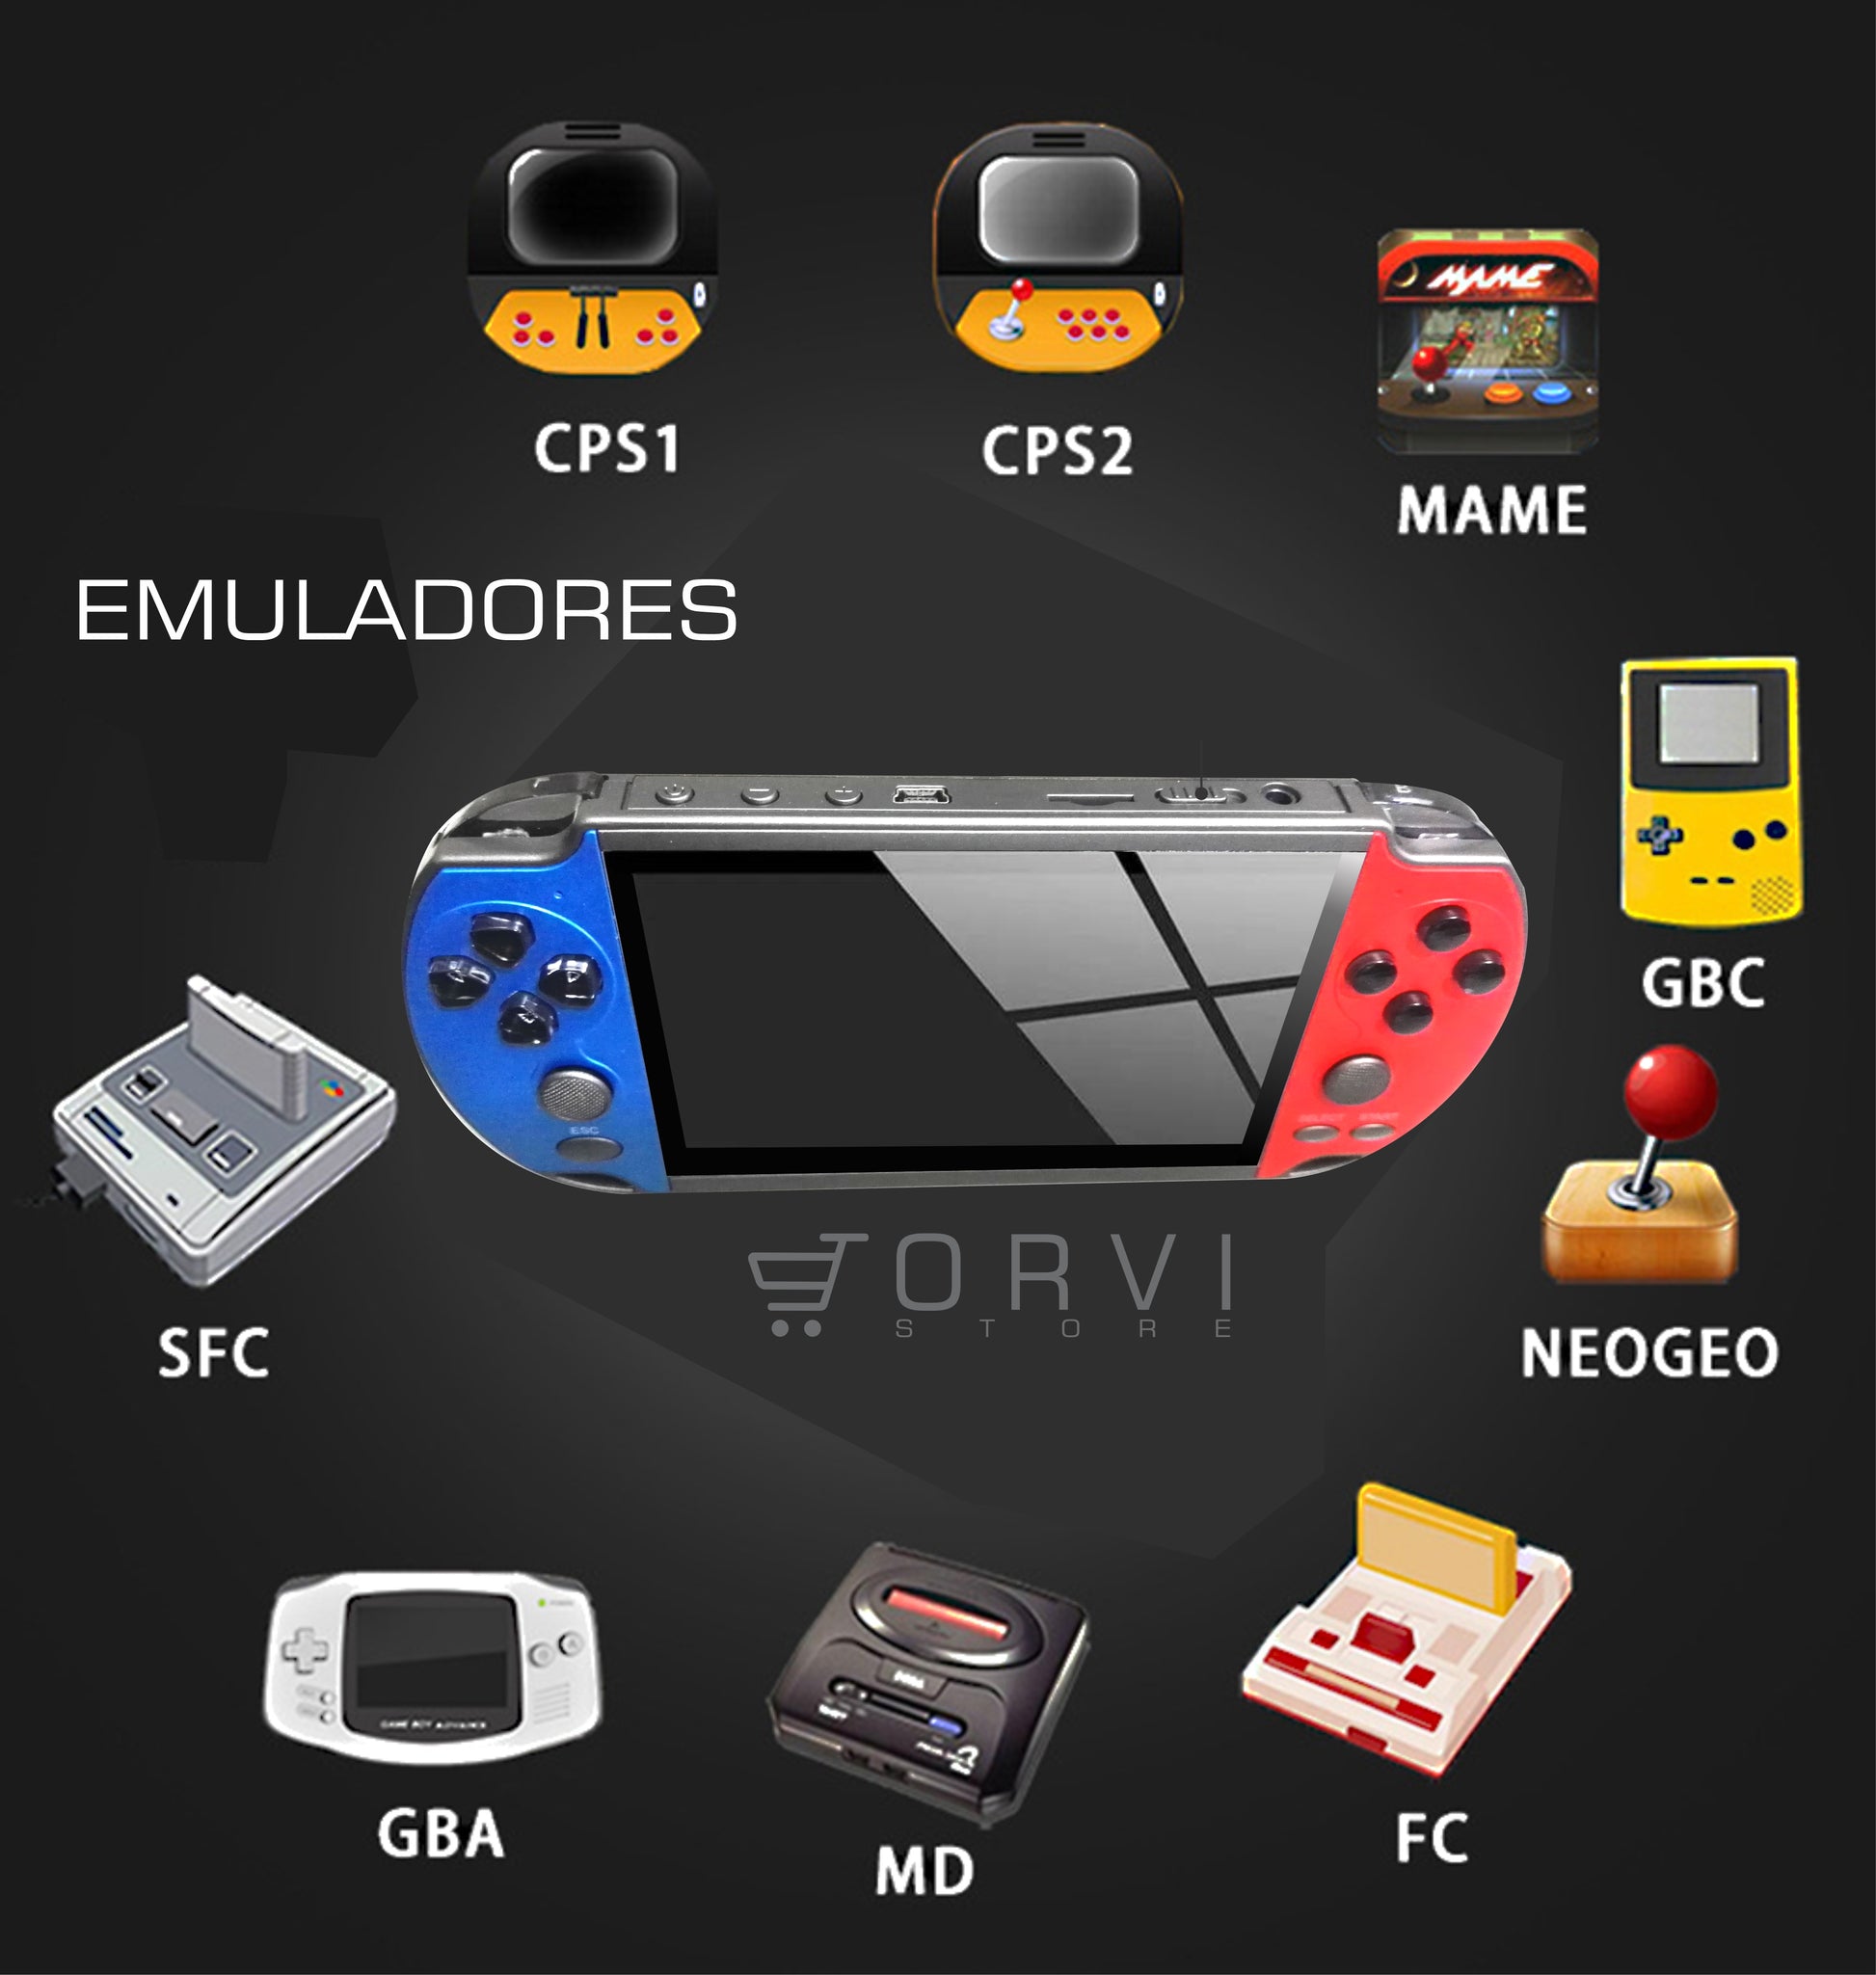 Consola de Juegos portátil mp4 player mp5 player de Juegos 4.3 Pulgadas  Pantalla 8 gb suporte para Juego PSP, Cámara, vídeo, e-book